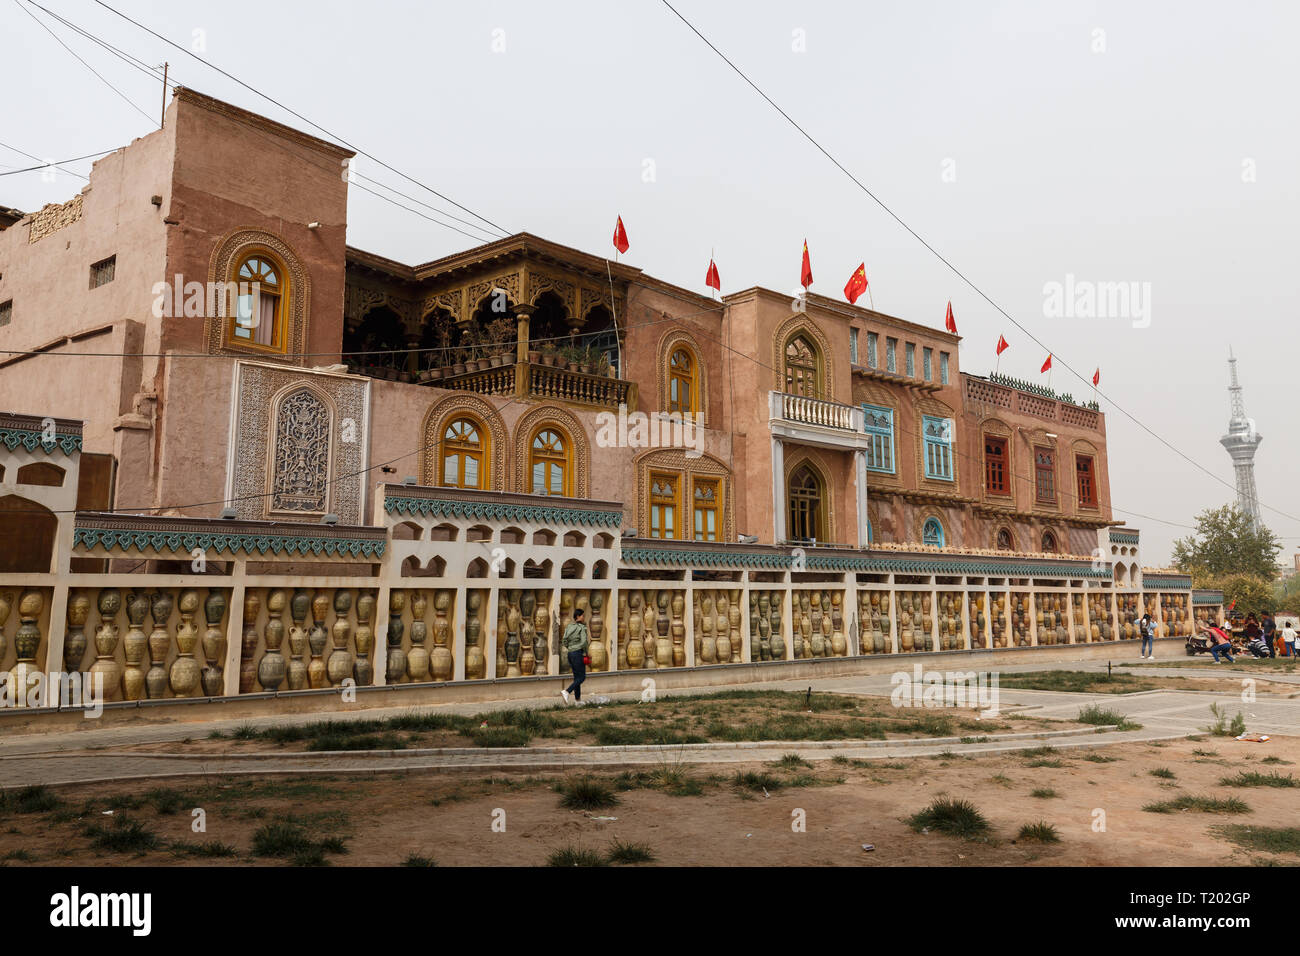 Maisons traditionnelles dans la vieille ville de Kashgar (Province du Xinjiang, Chine) Banque D'Images